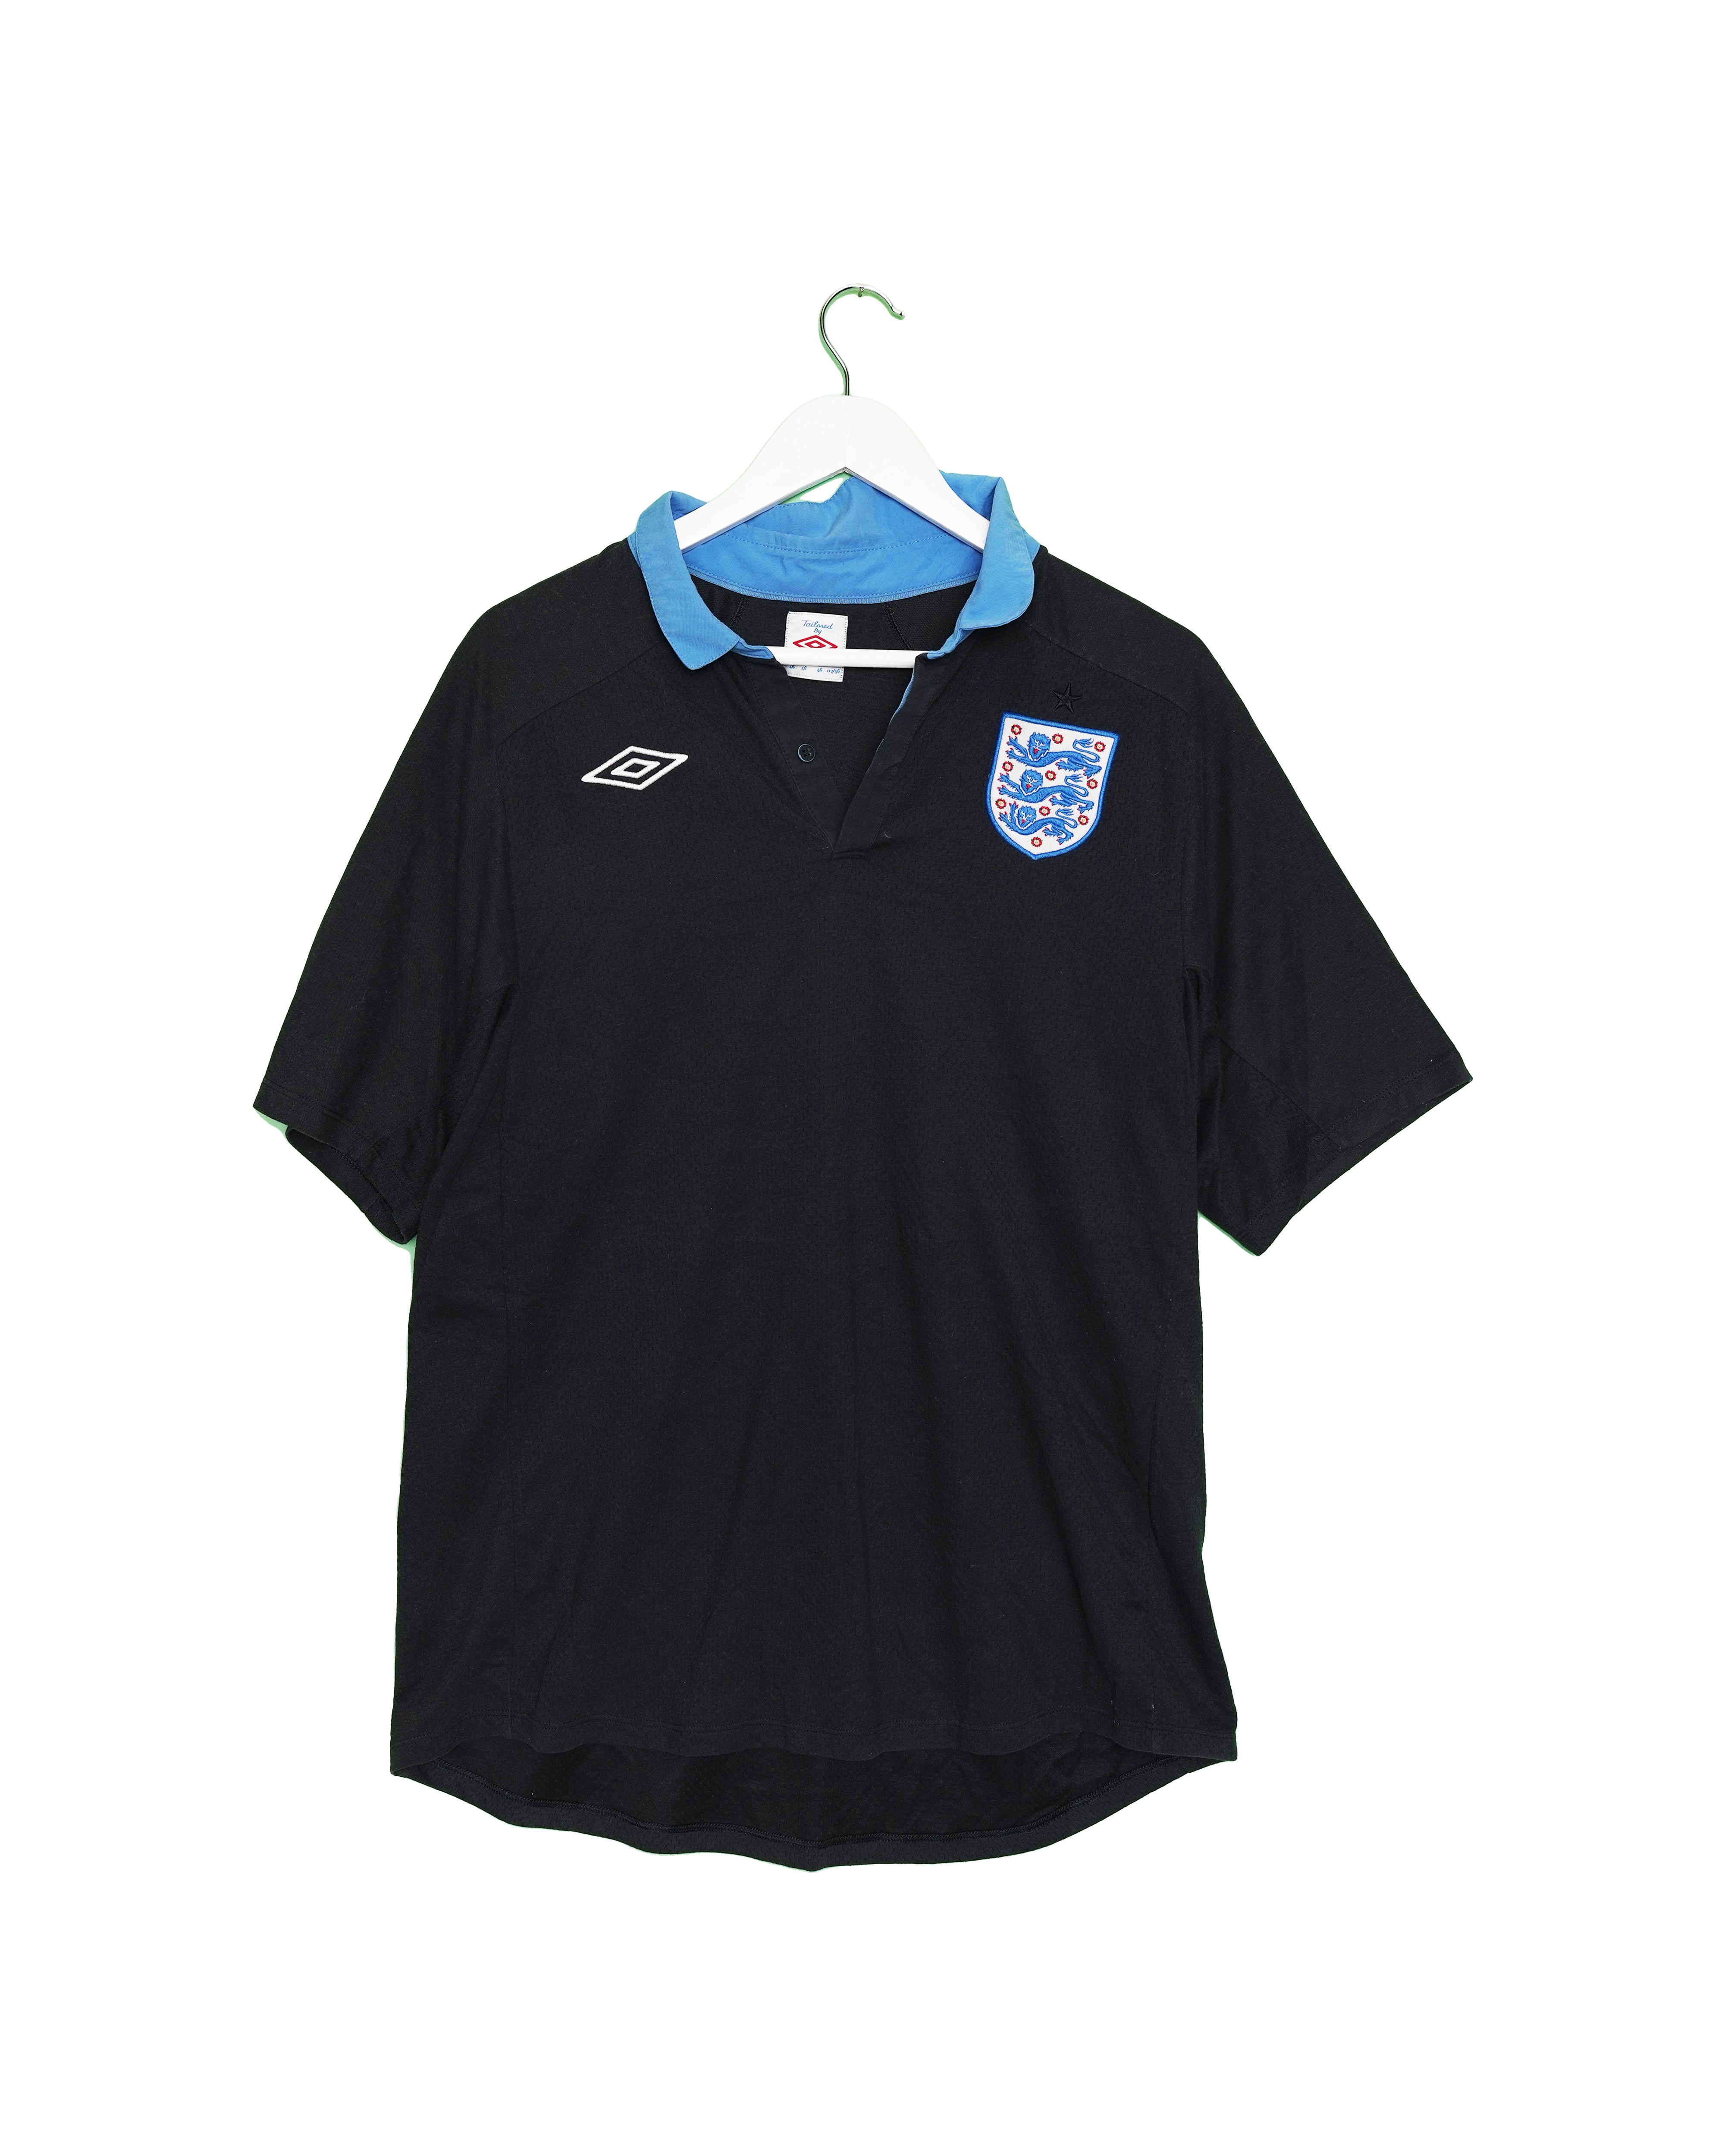 England 2012 Away Shirt - 2XL - #1834